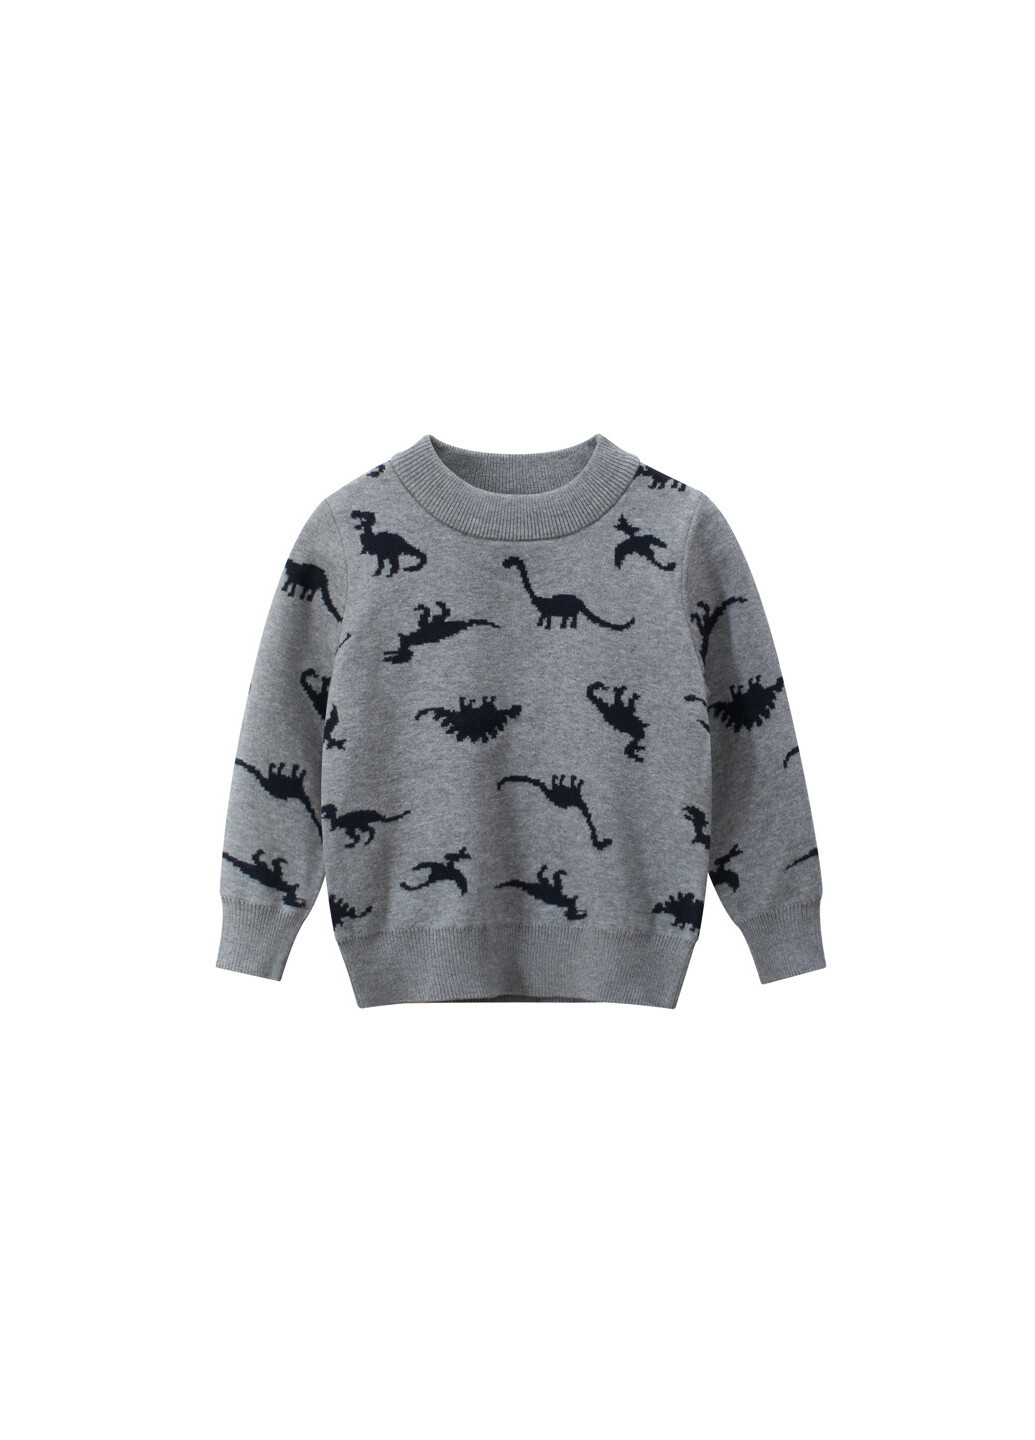 Сірий демісезонний светр для хлопчика з малюнком динозаврів сірий black dinosaurs 27 KIDS 59195